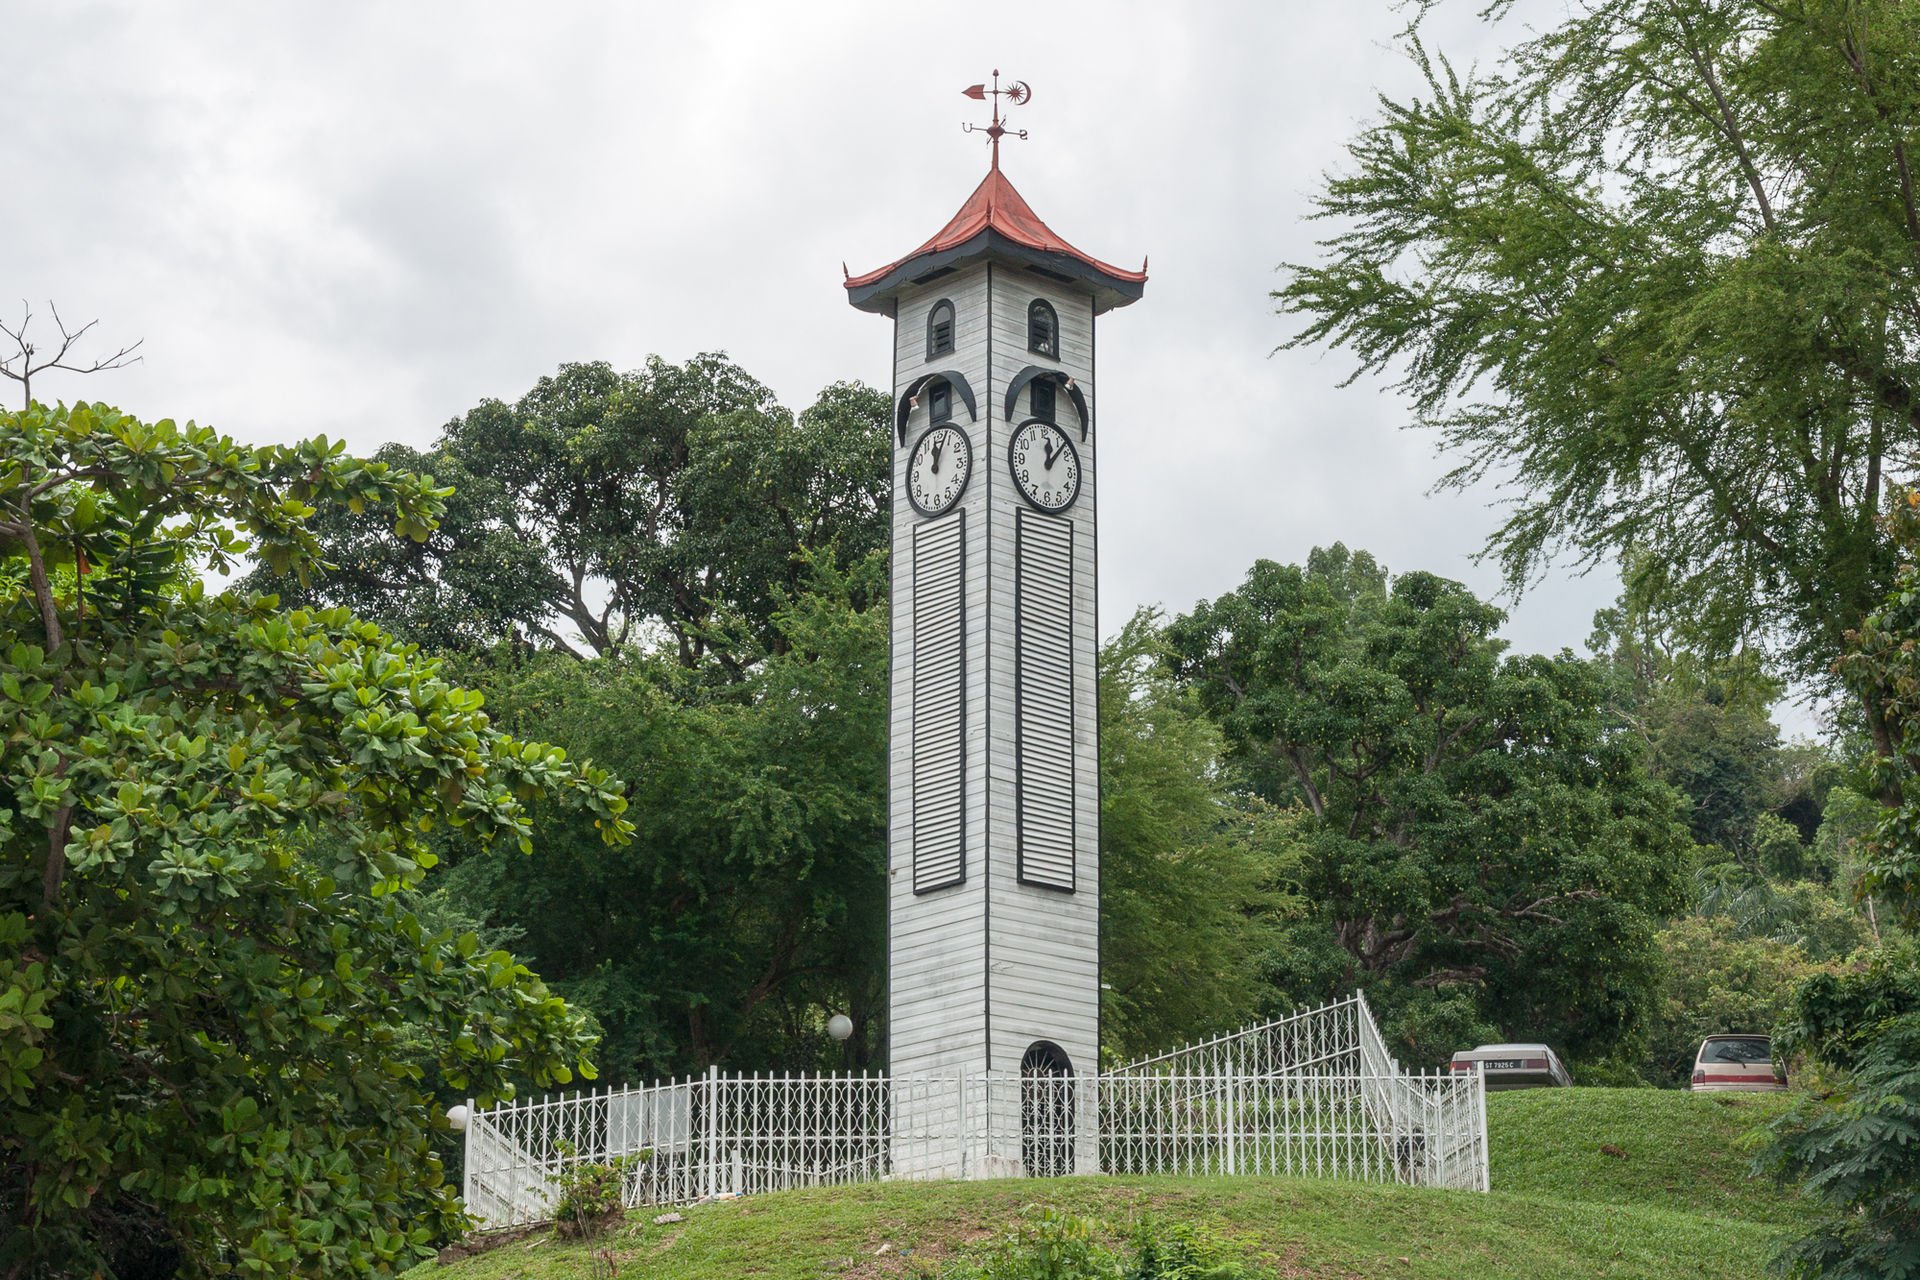 Atkinson Clock Tower, Kota Kinabalu